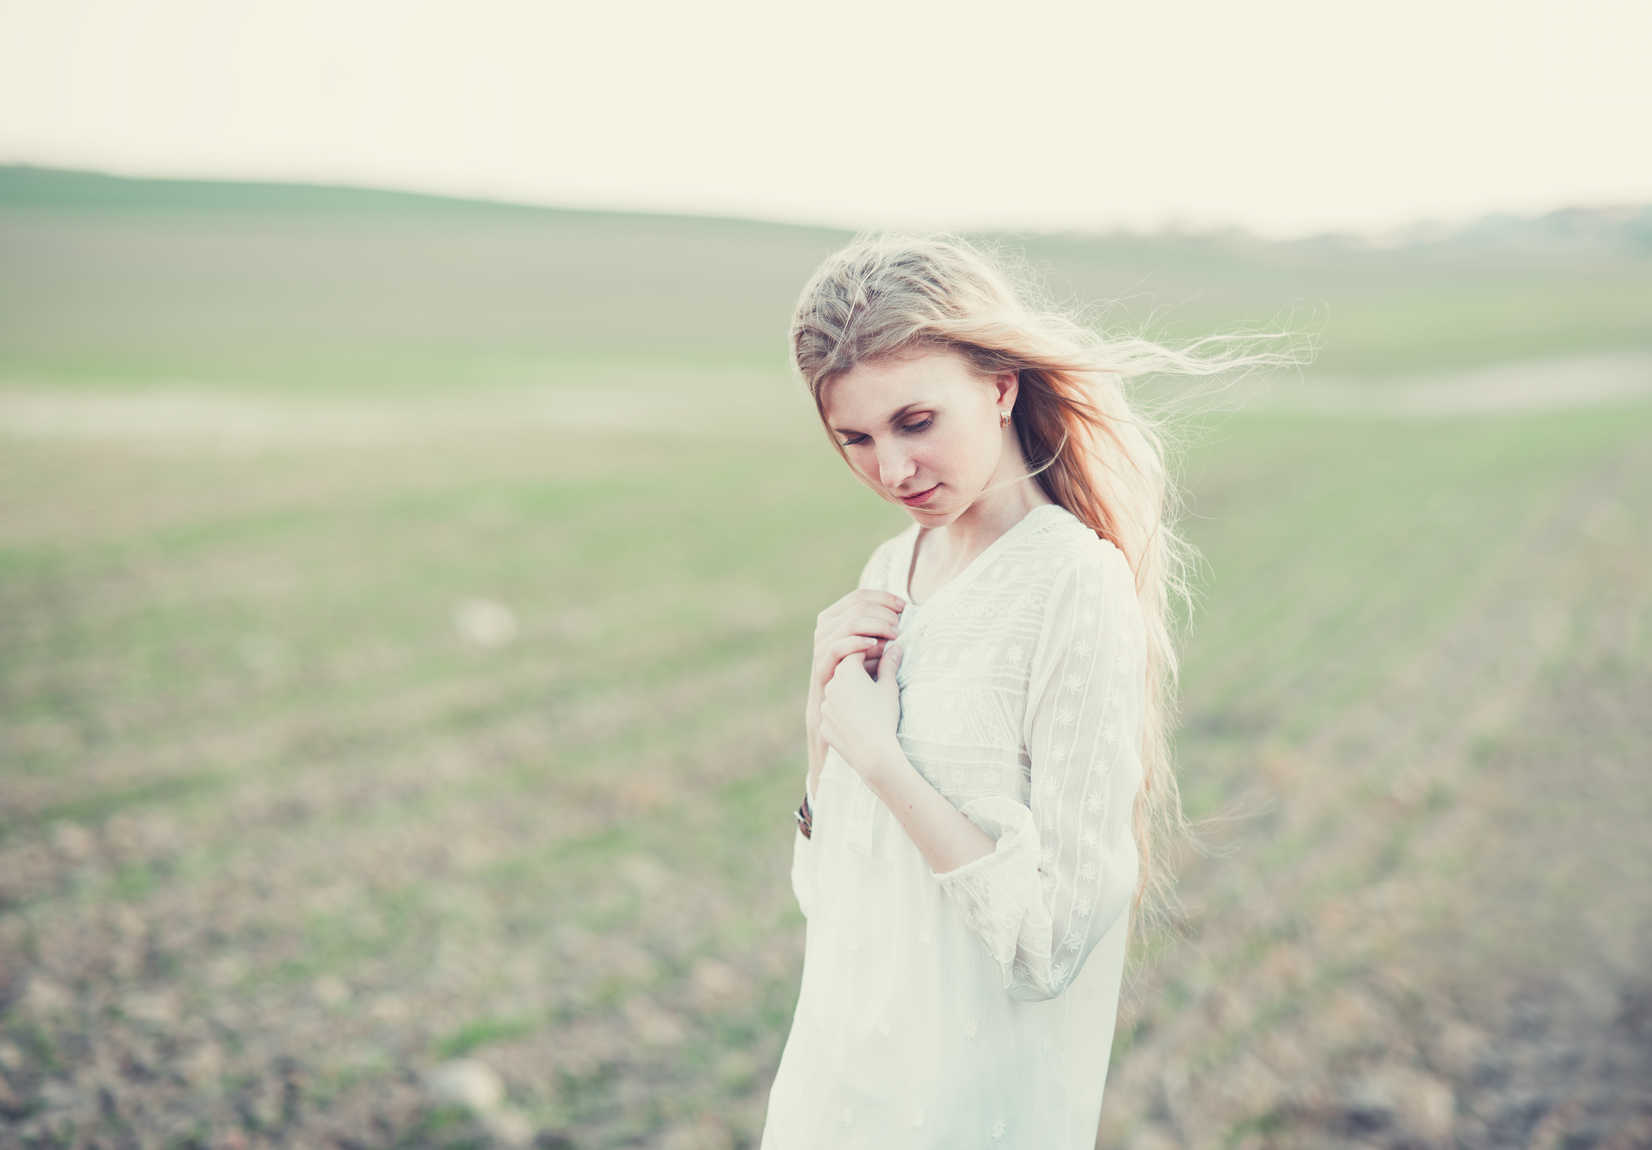 beautiful girl in dress walking in a field in spring